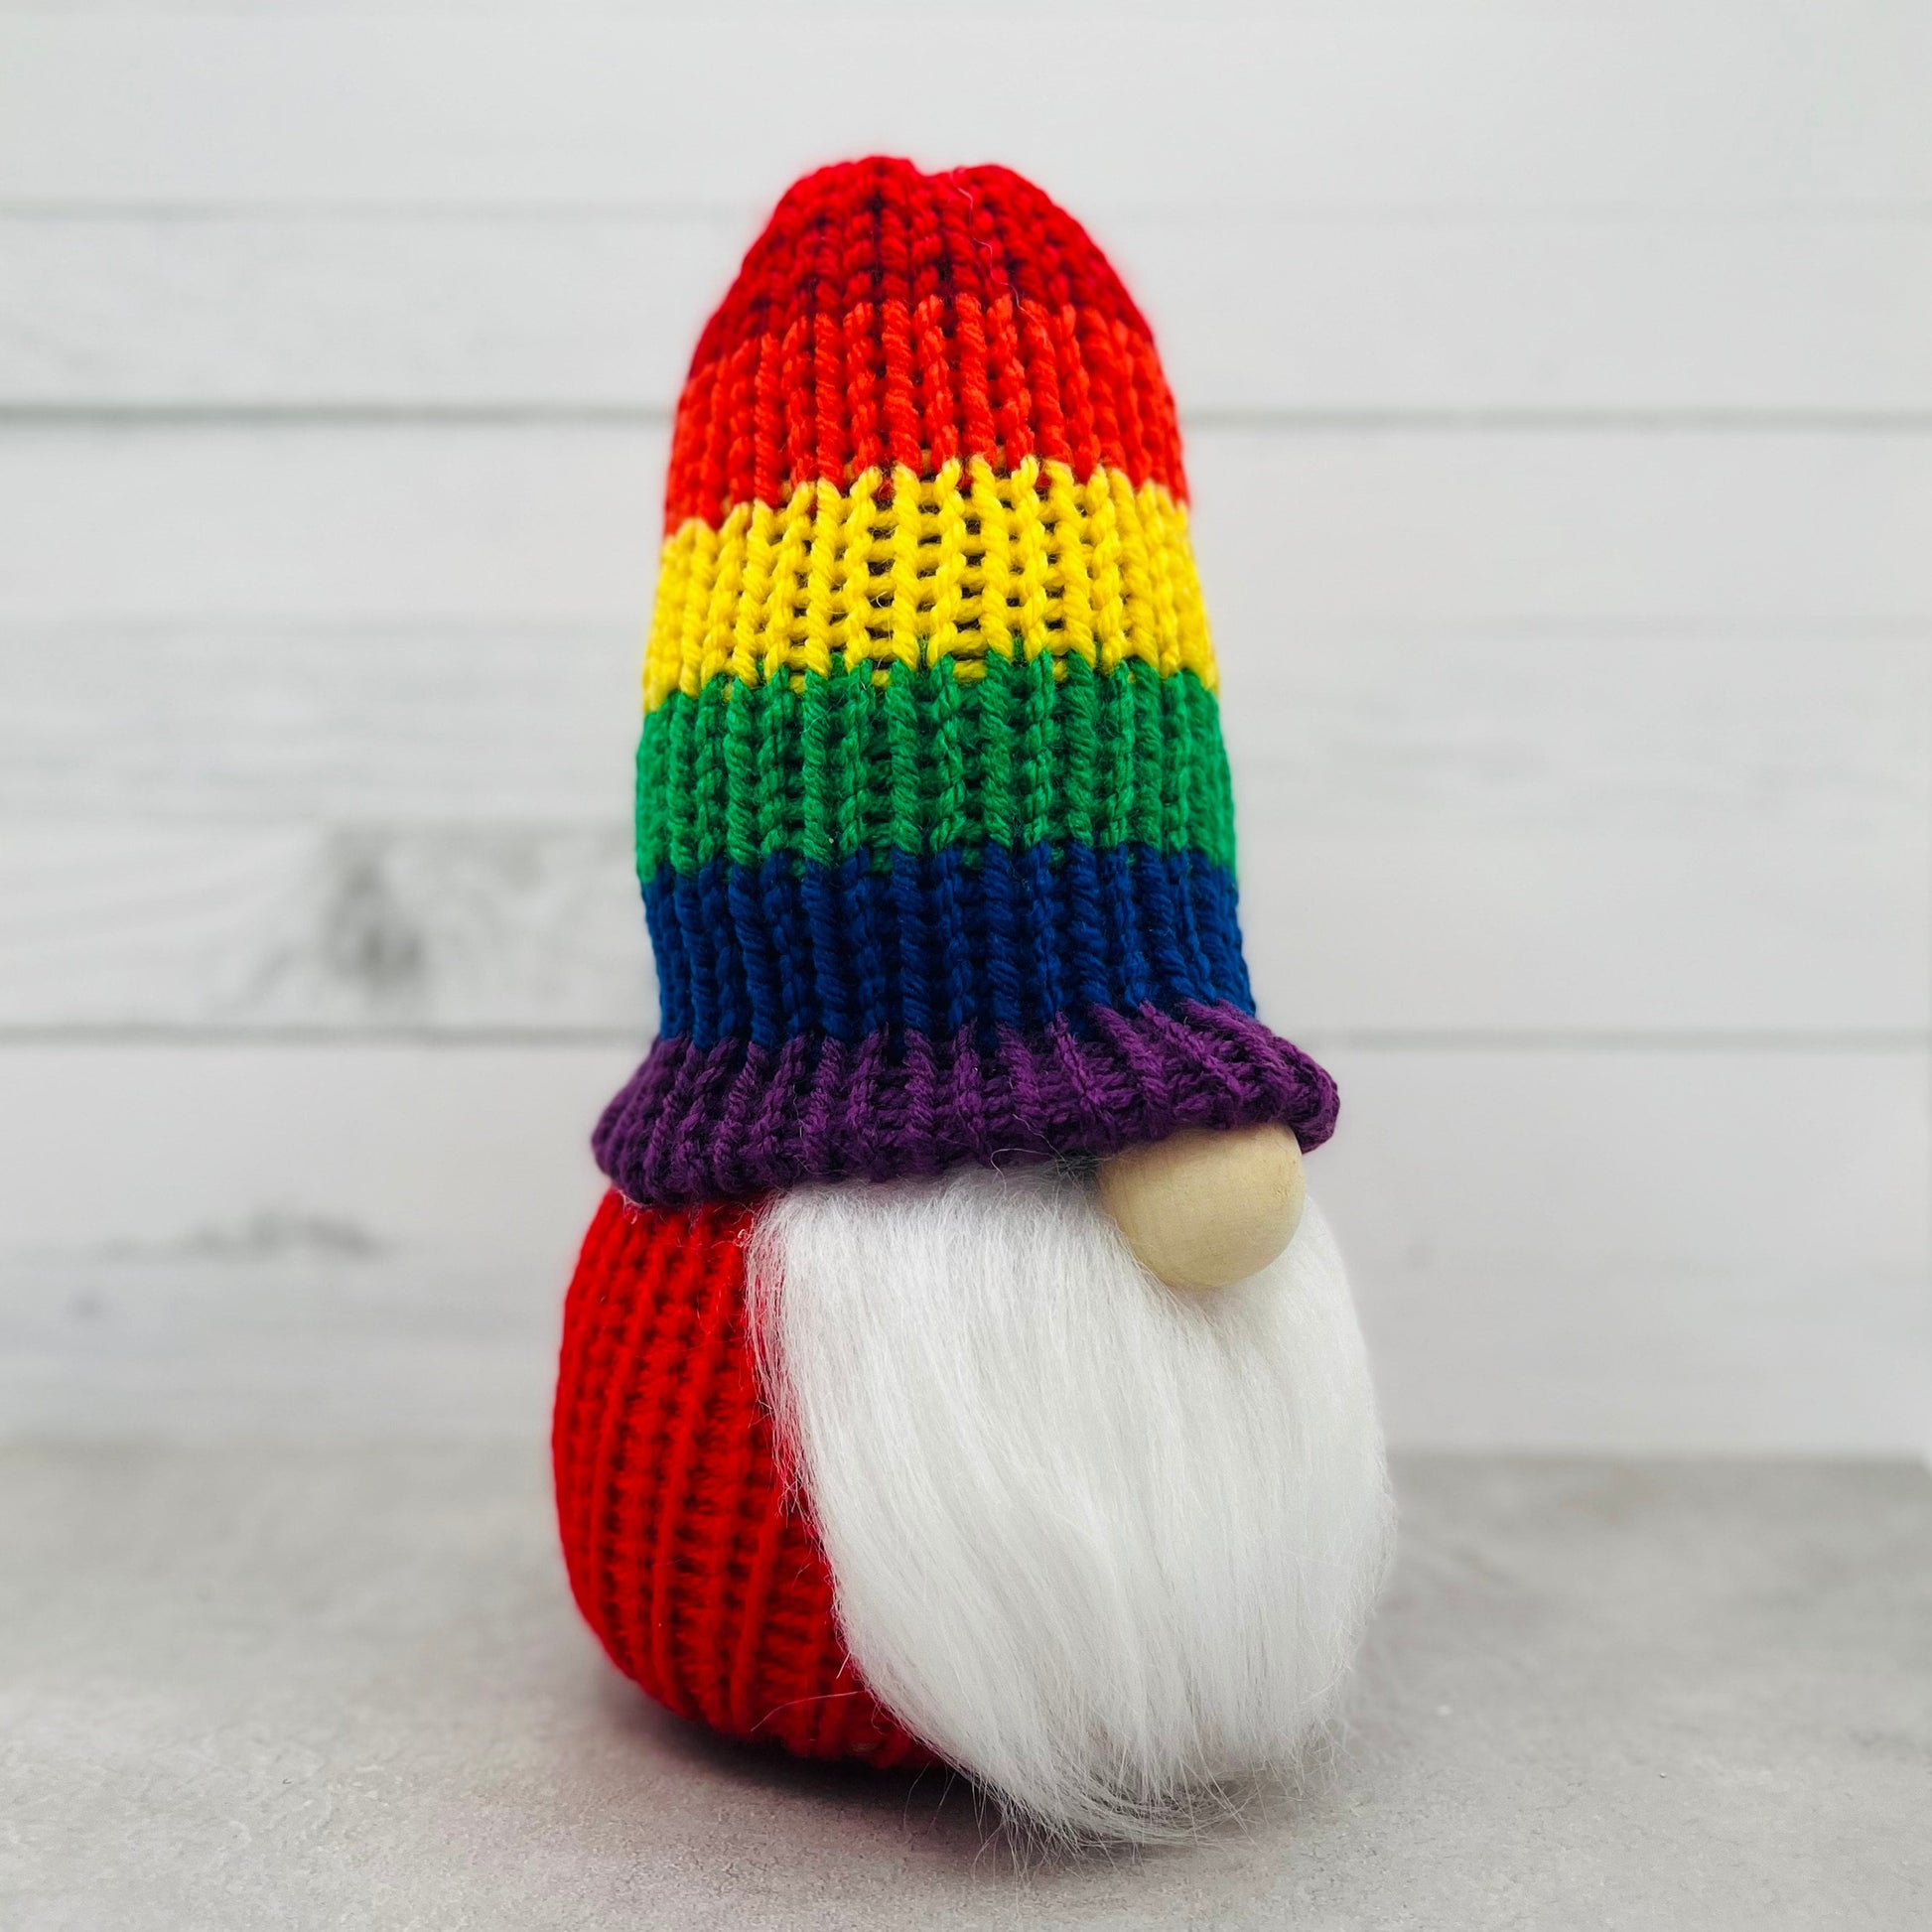 Rainbow Pride Gnome / Gay Pride Tiered Tray Decor / Rustic Farmhouse Decor / LGBTQ Gnome